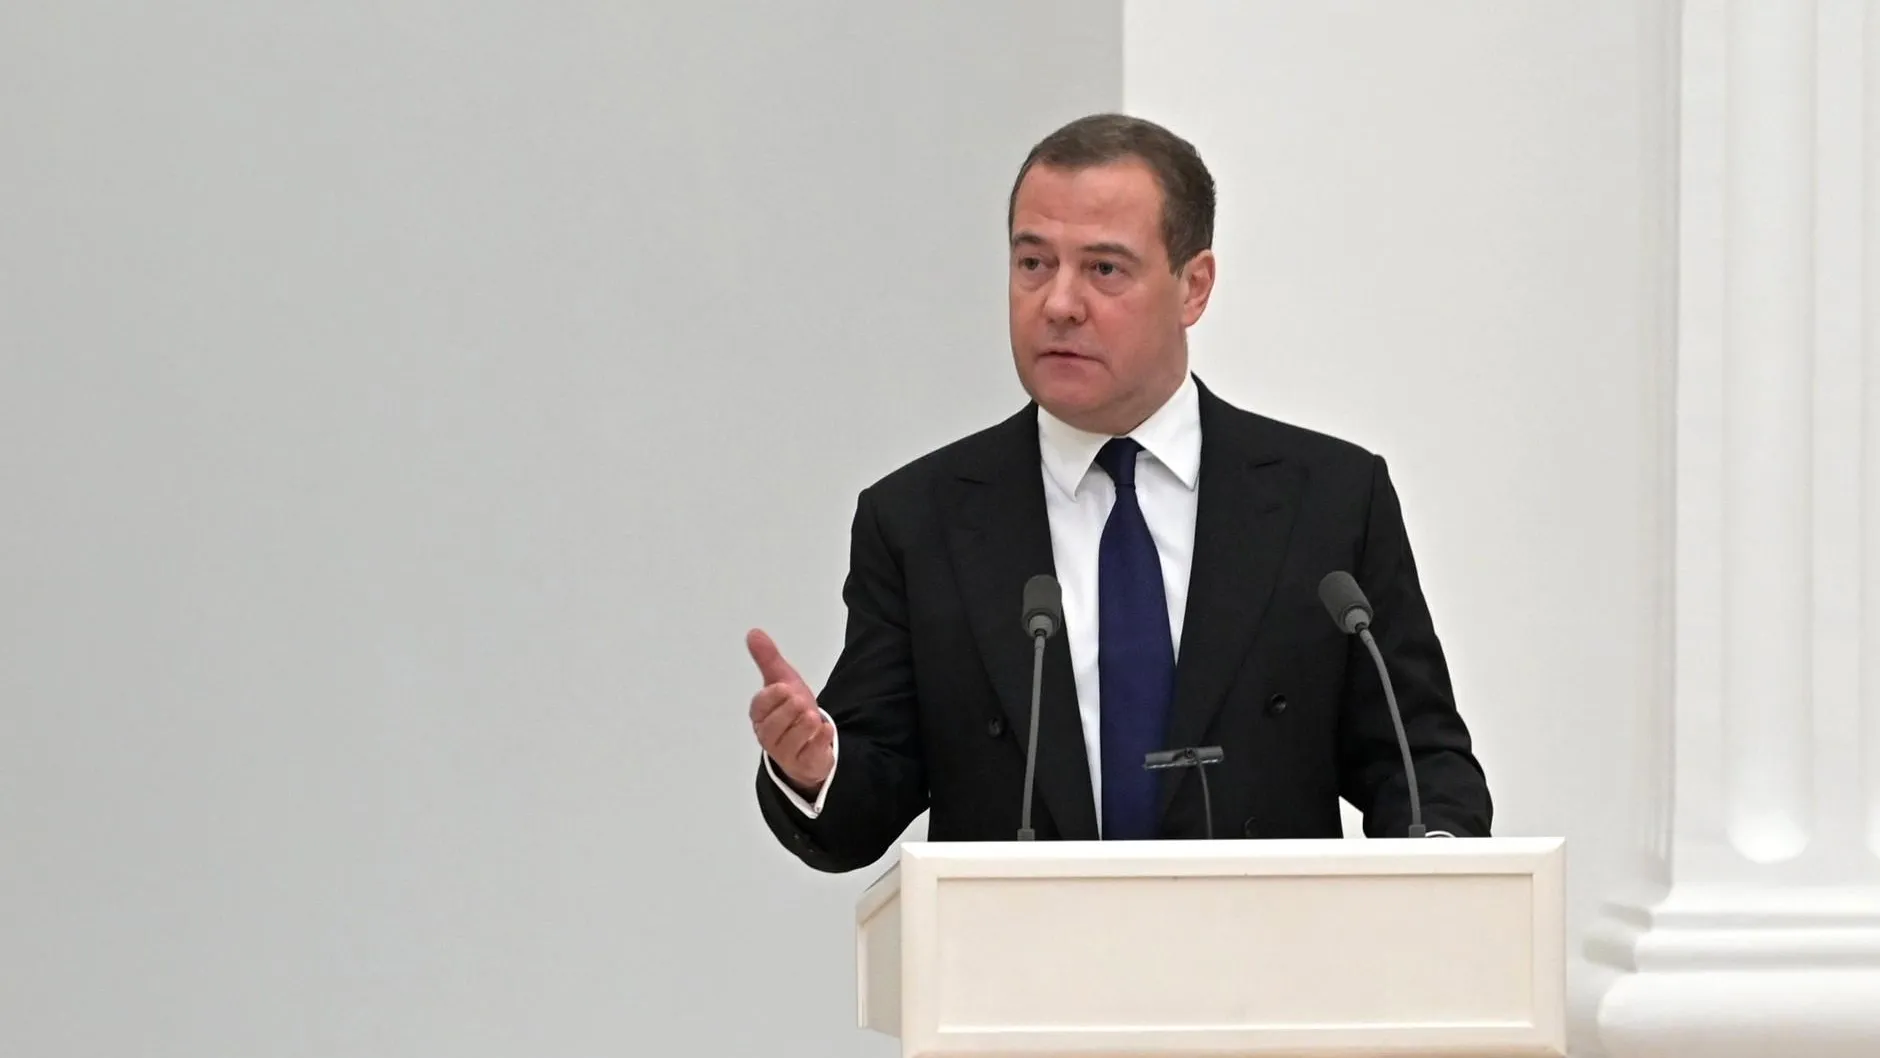 Медведев пожелал здоровья вышедшему из президентской гонки Байдену